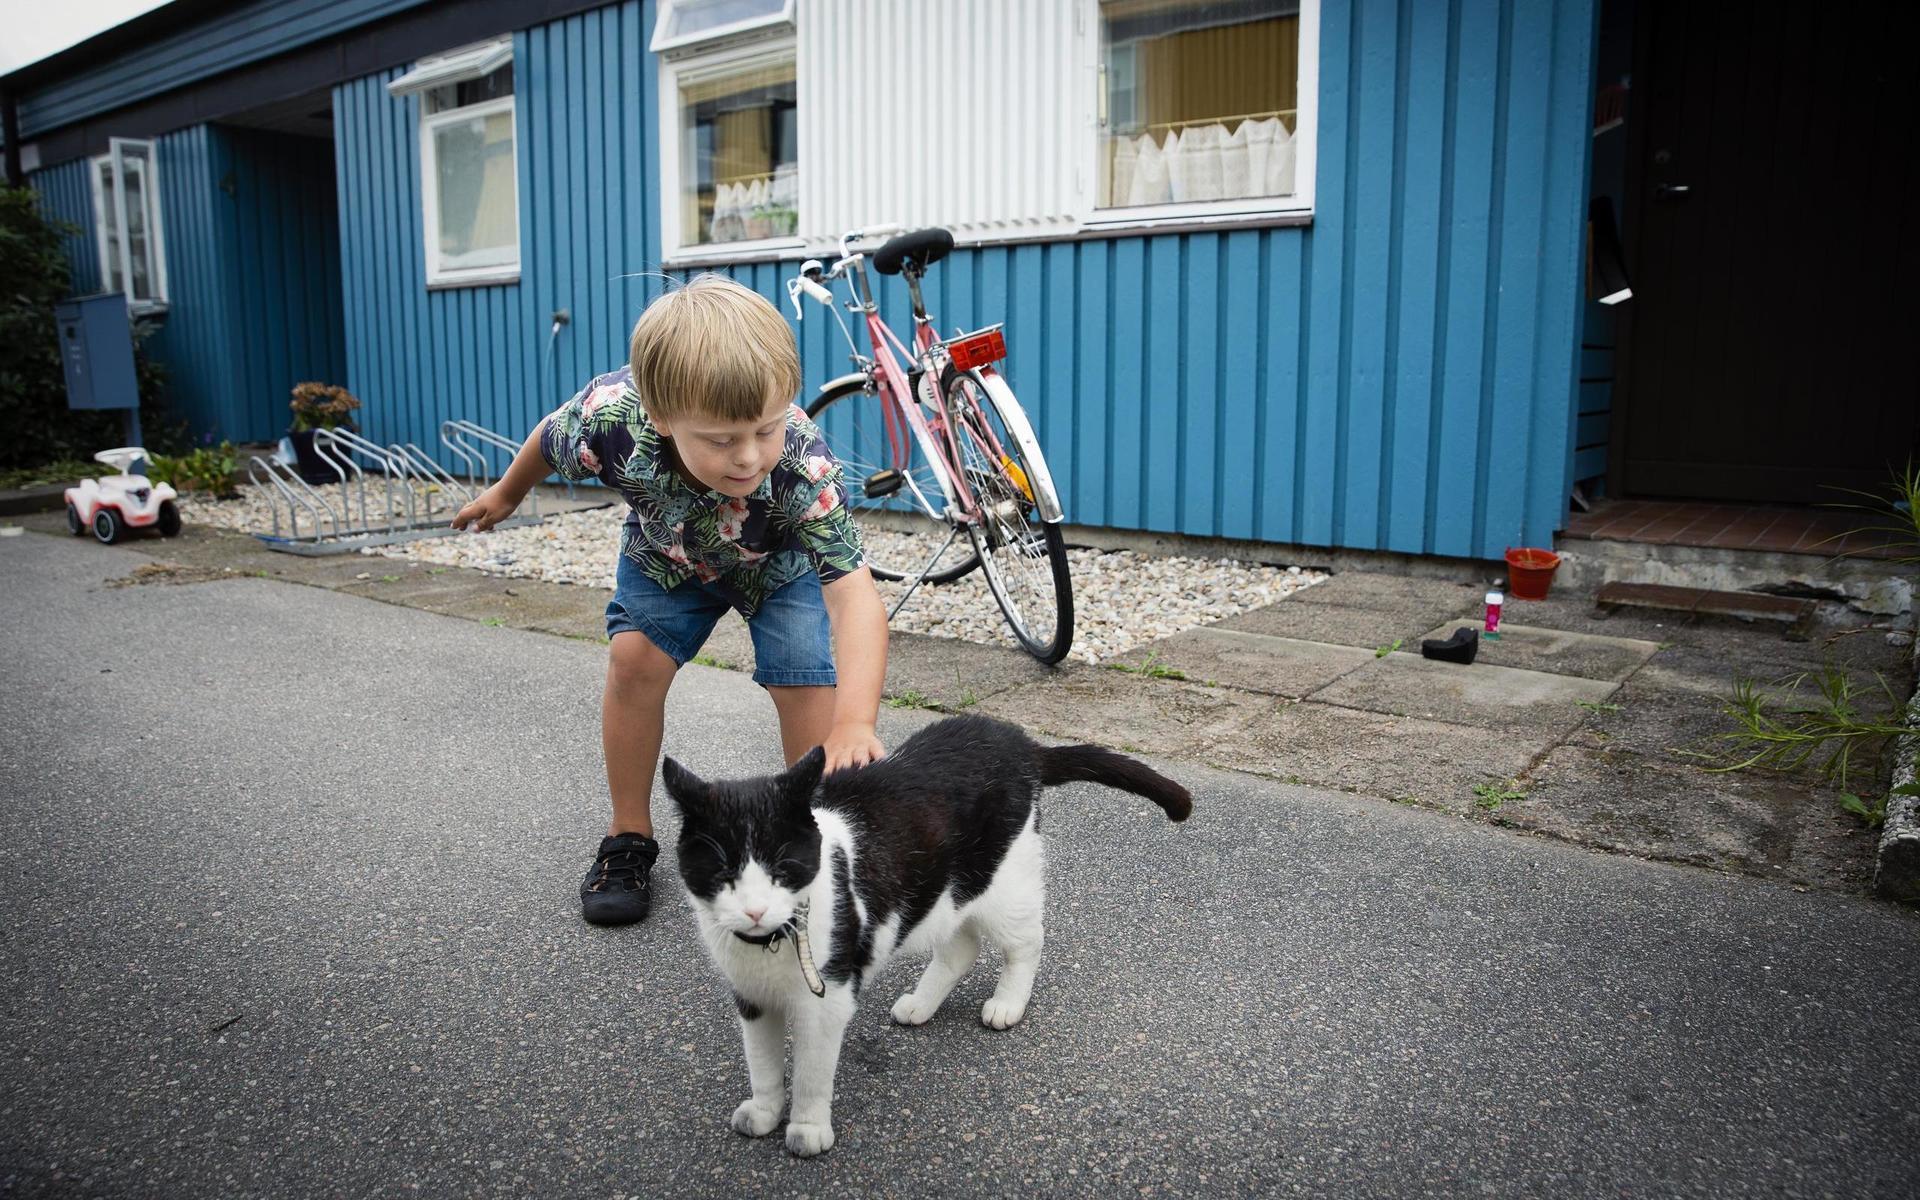 När grannens katt kommer förbi på gården, stannar Malte för att klappa den. ”En kort promenad tar ofta väldigt lång tid” säger Catarina Dudas.